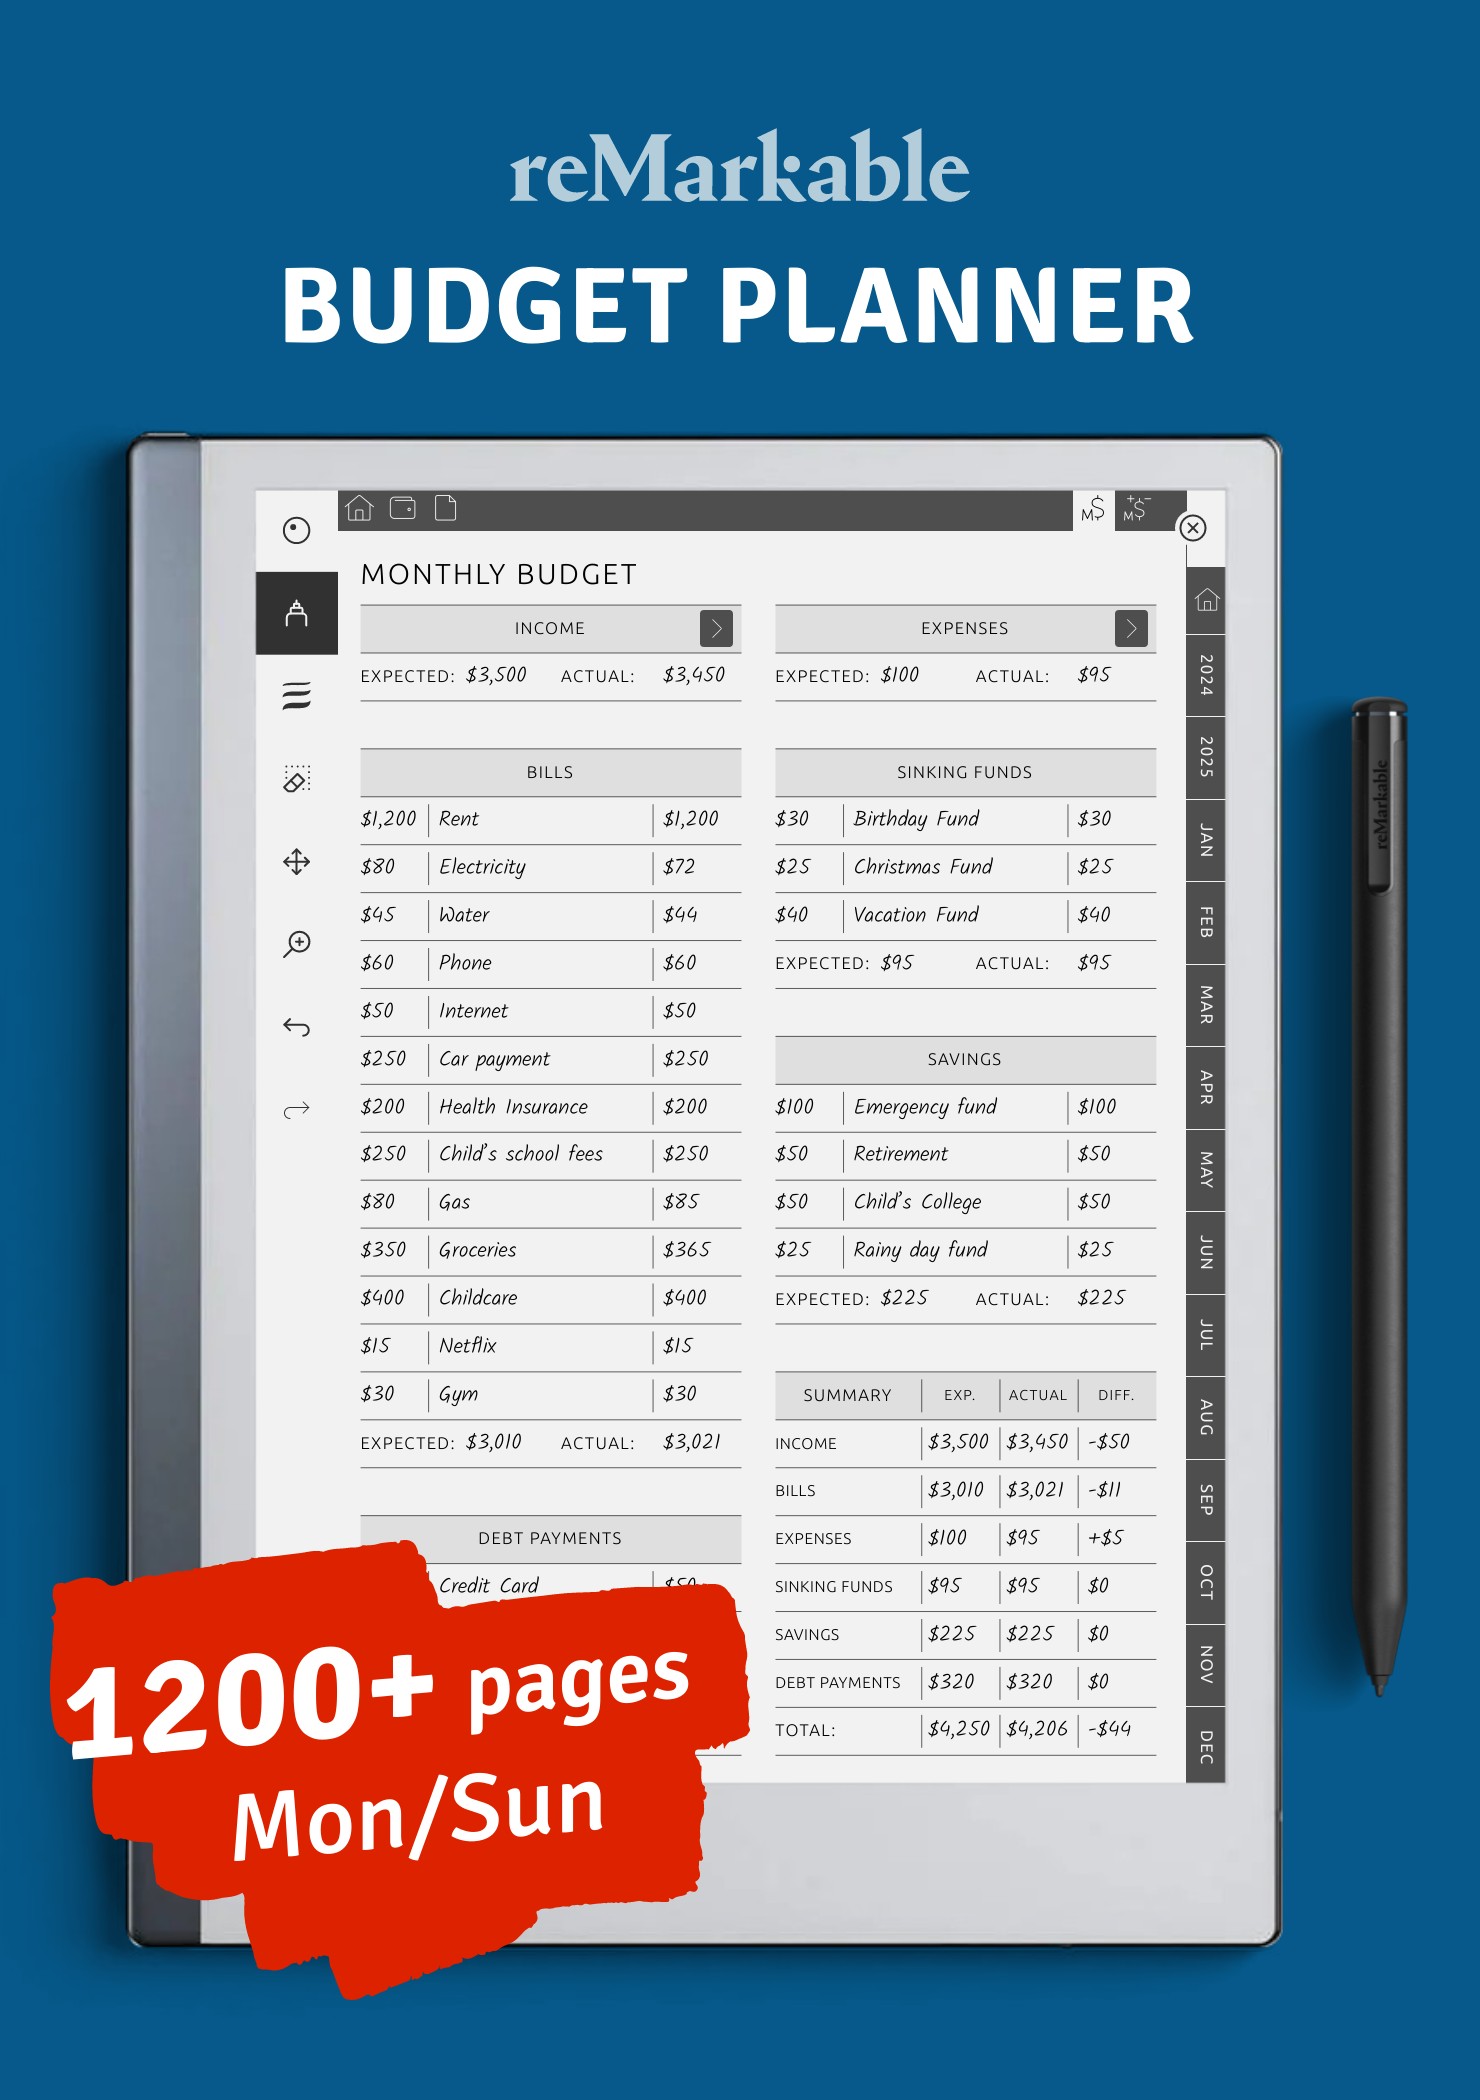 Download Budget Planner PDF for reMarkable